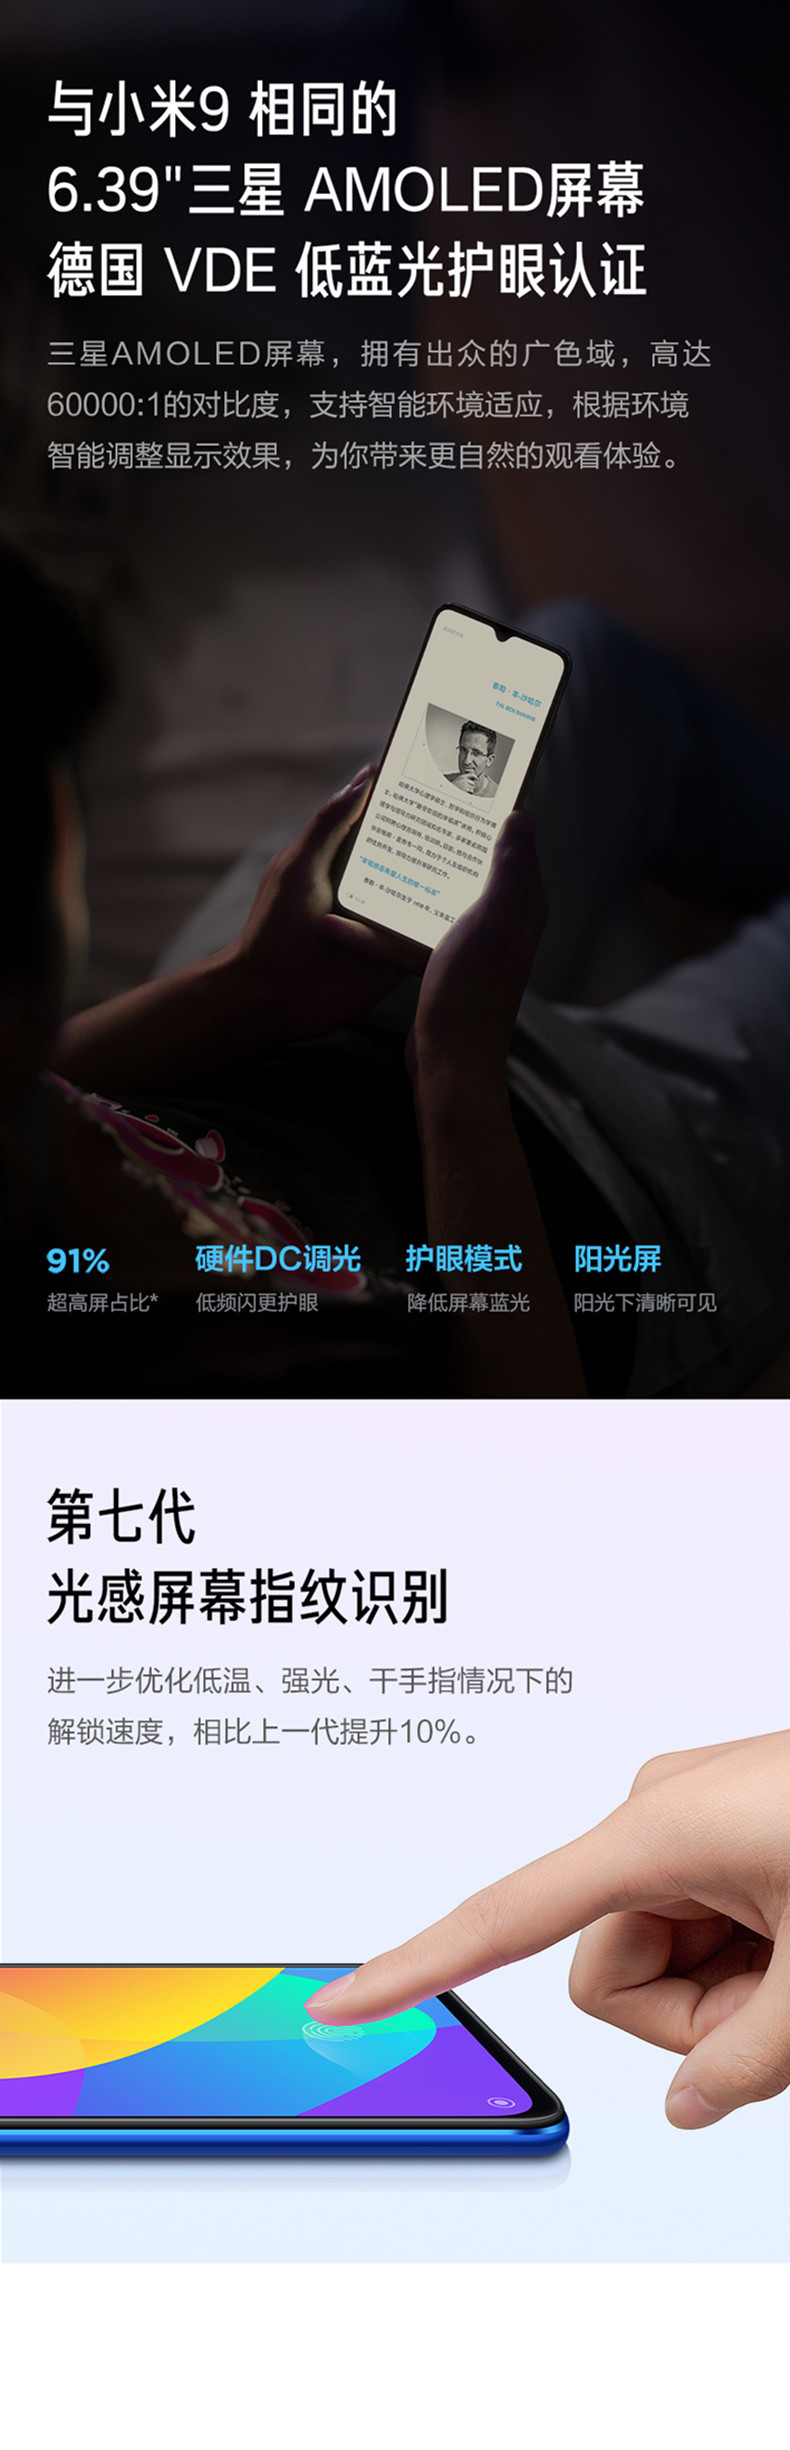 小米/MIUI CC9 3200万美颜自拍 4800万超清三摄 多功能NFC 游戏智能拍照手机